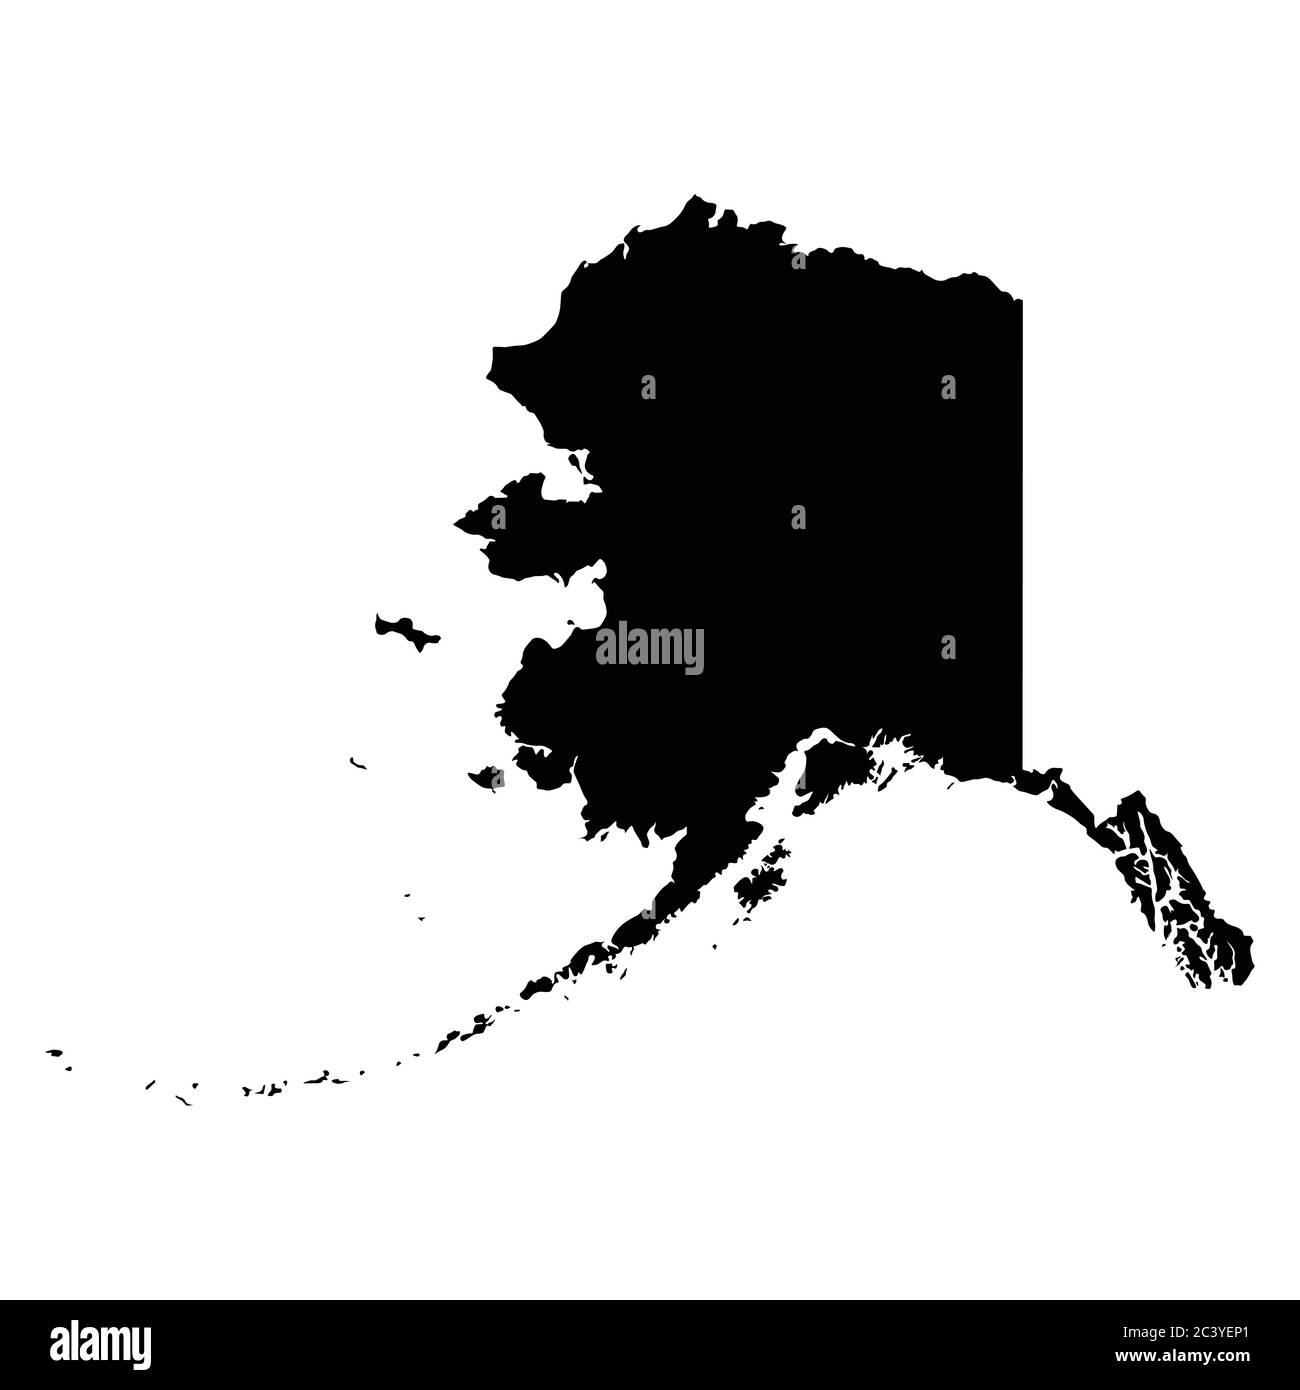 Alaska AK State Map USA. Schwarze Silhouette einfarbige Karte isoliert auf weißem Hintergrund. EPS-Vektor Stock Vektor